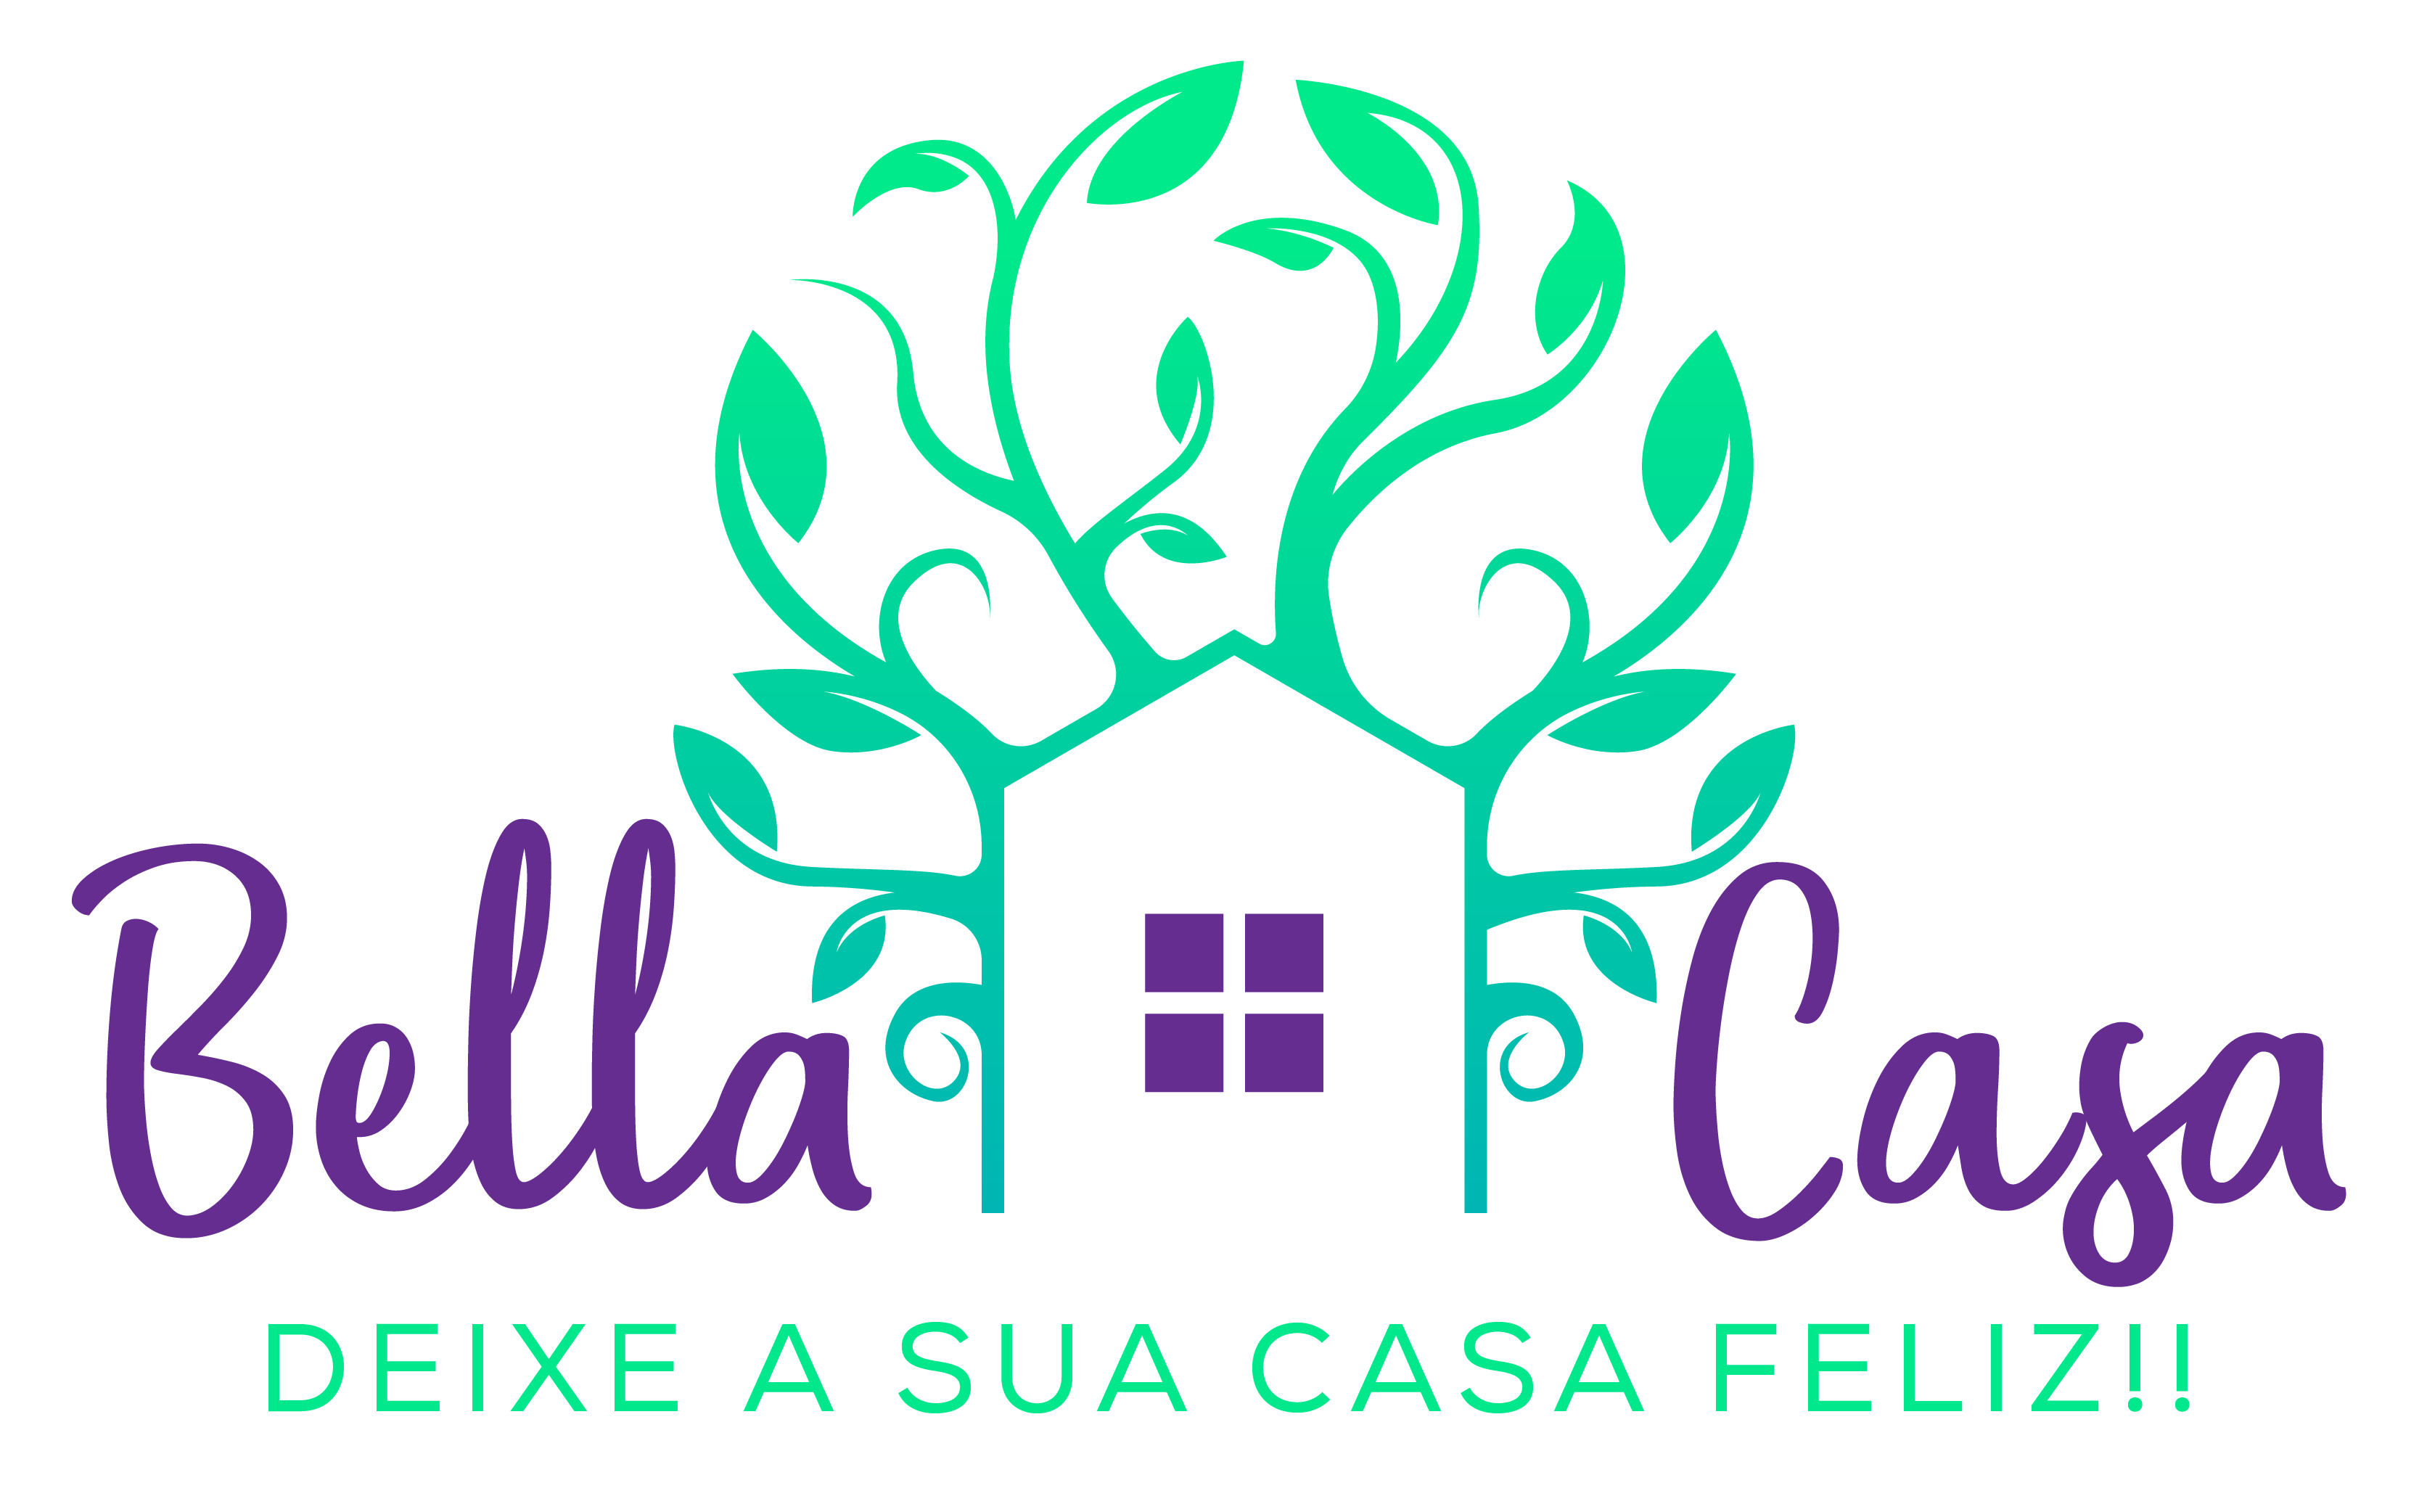 My Bella Casa